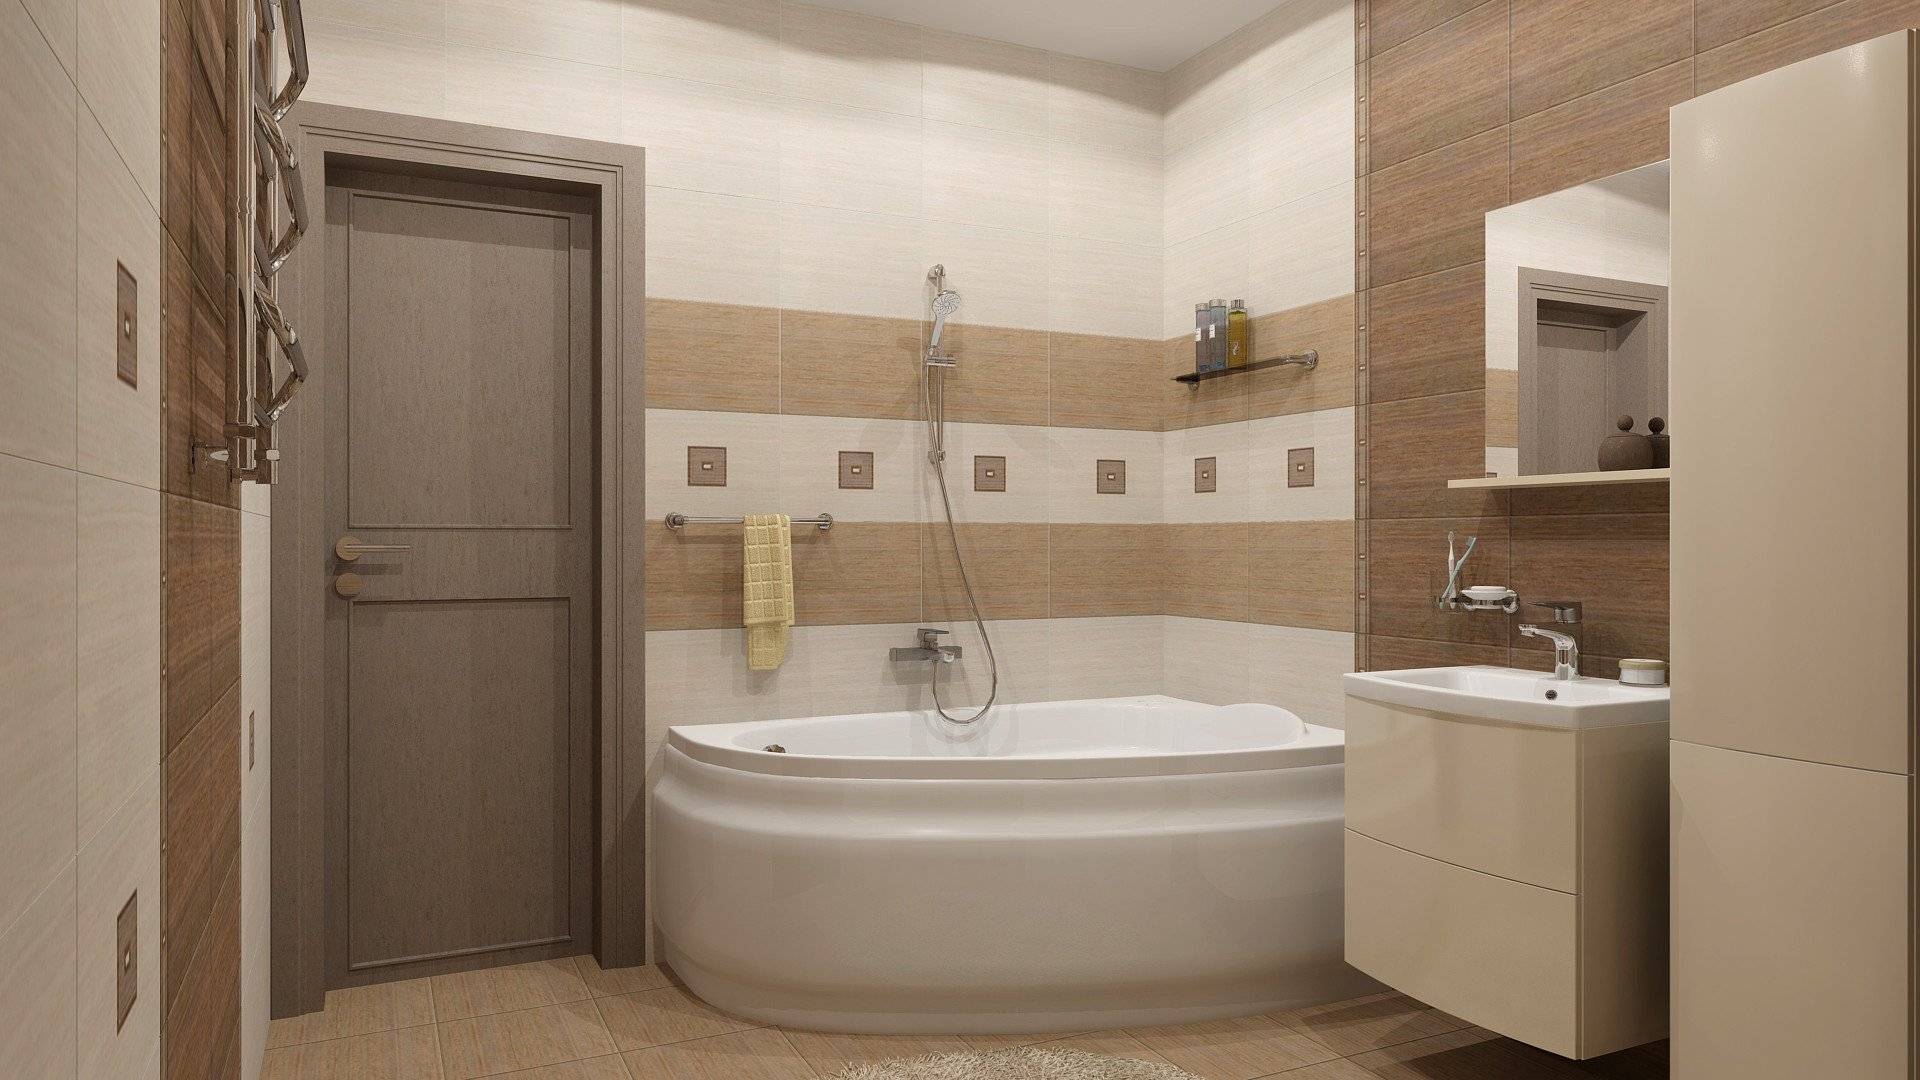 Бежевая ванная комната – фото идеи дизайн интерьера в бежевых тонах